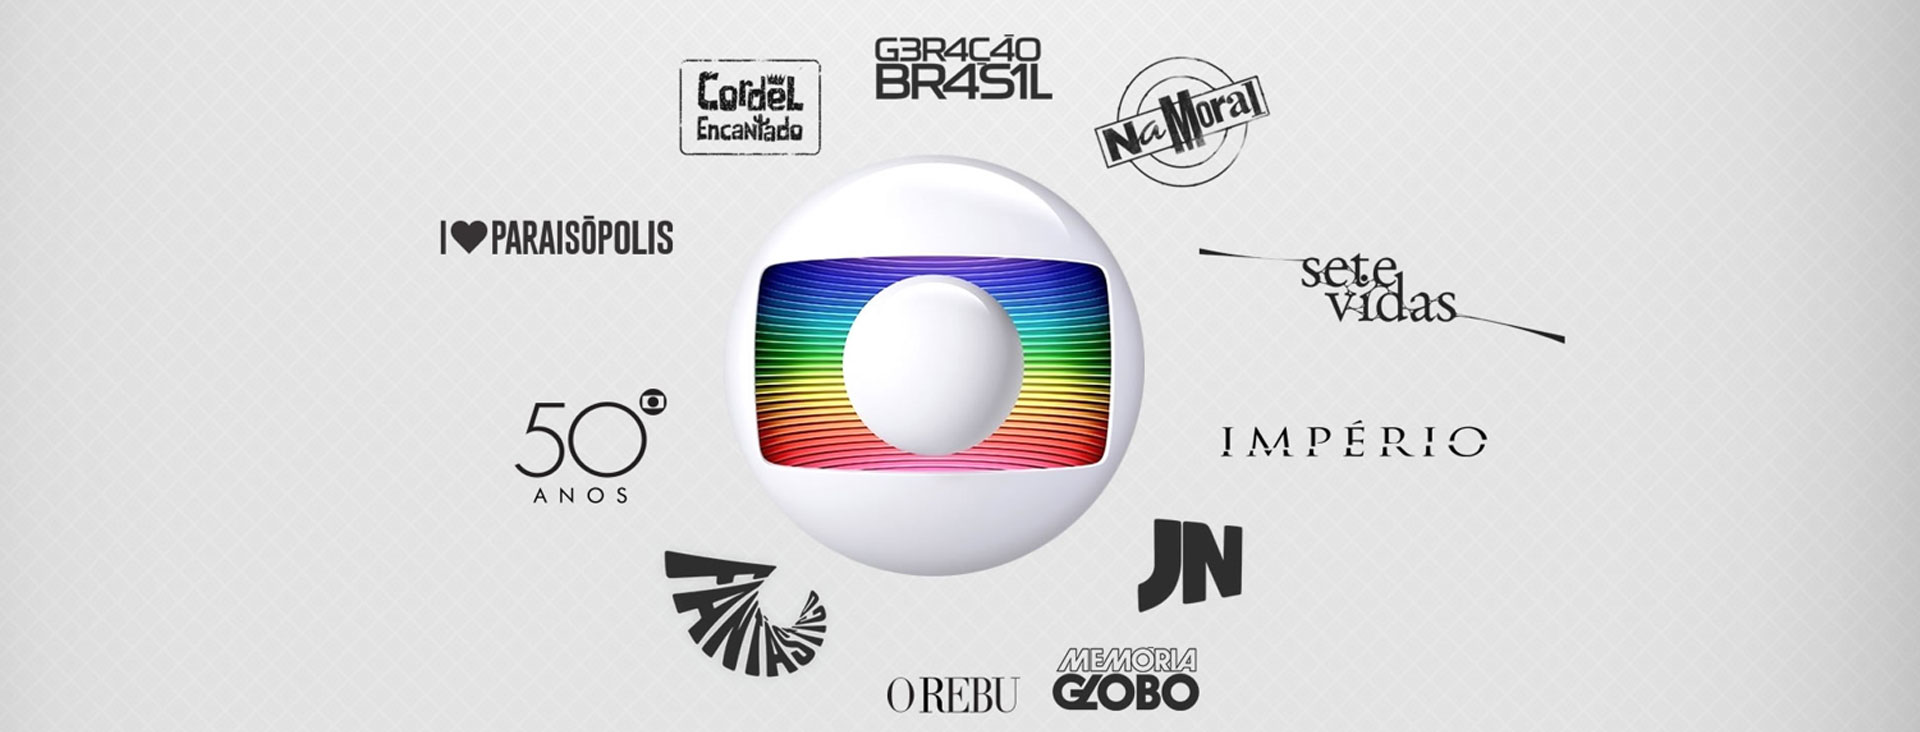 Case Promoção de novos conteúdo do Grupo Globo